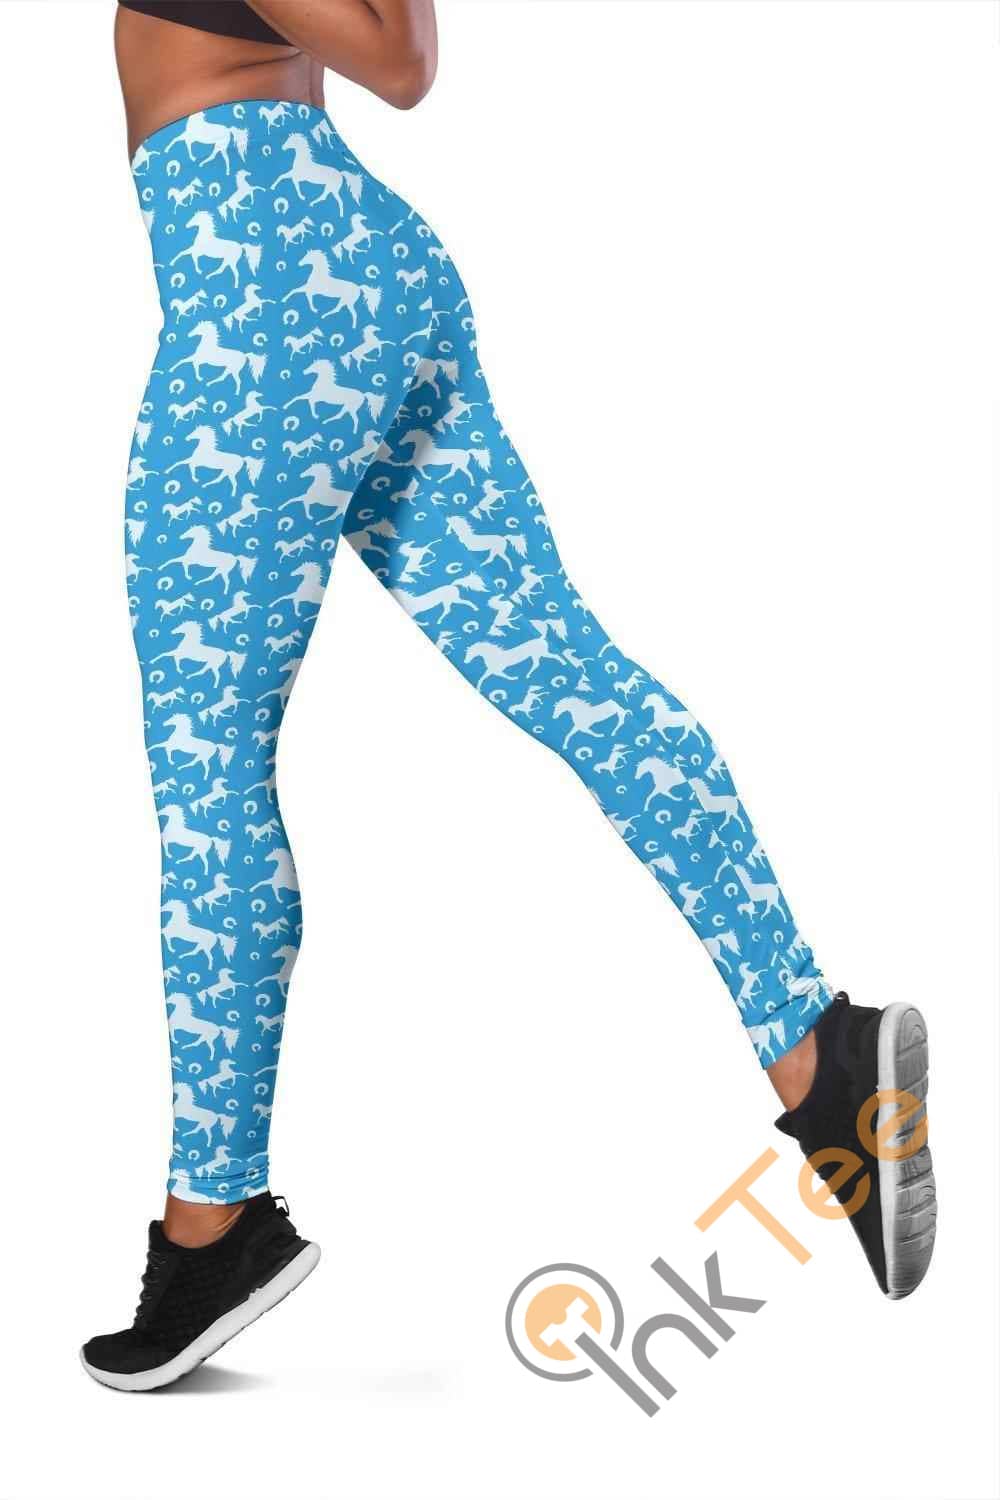 Inktee Store - Blue Horse 3D All Over Print For Yoga Fitness Women'S Leggings Image